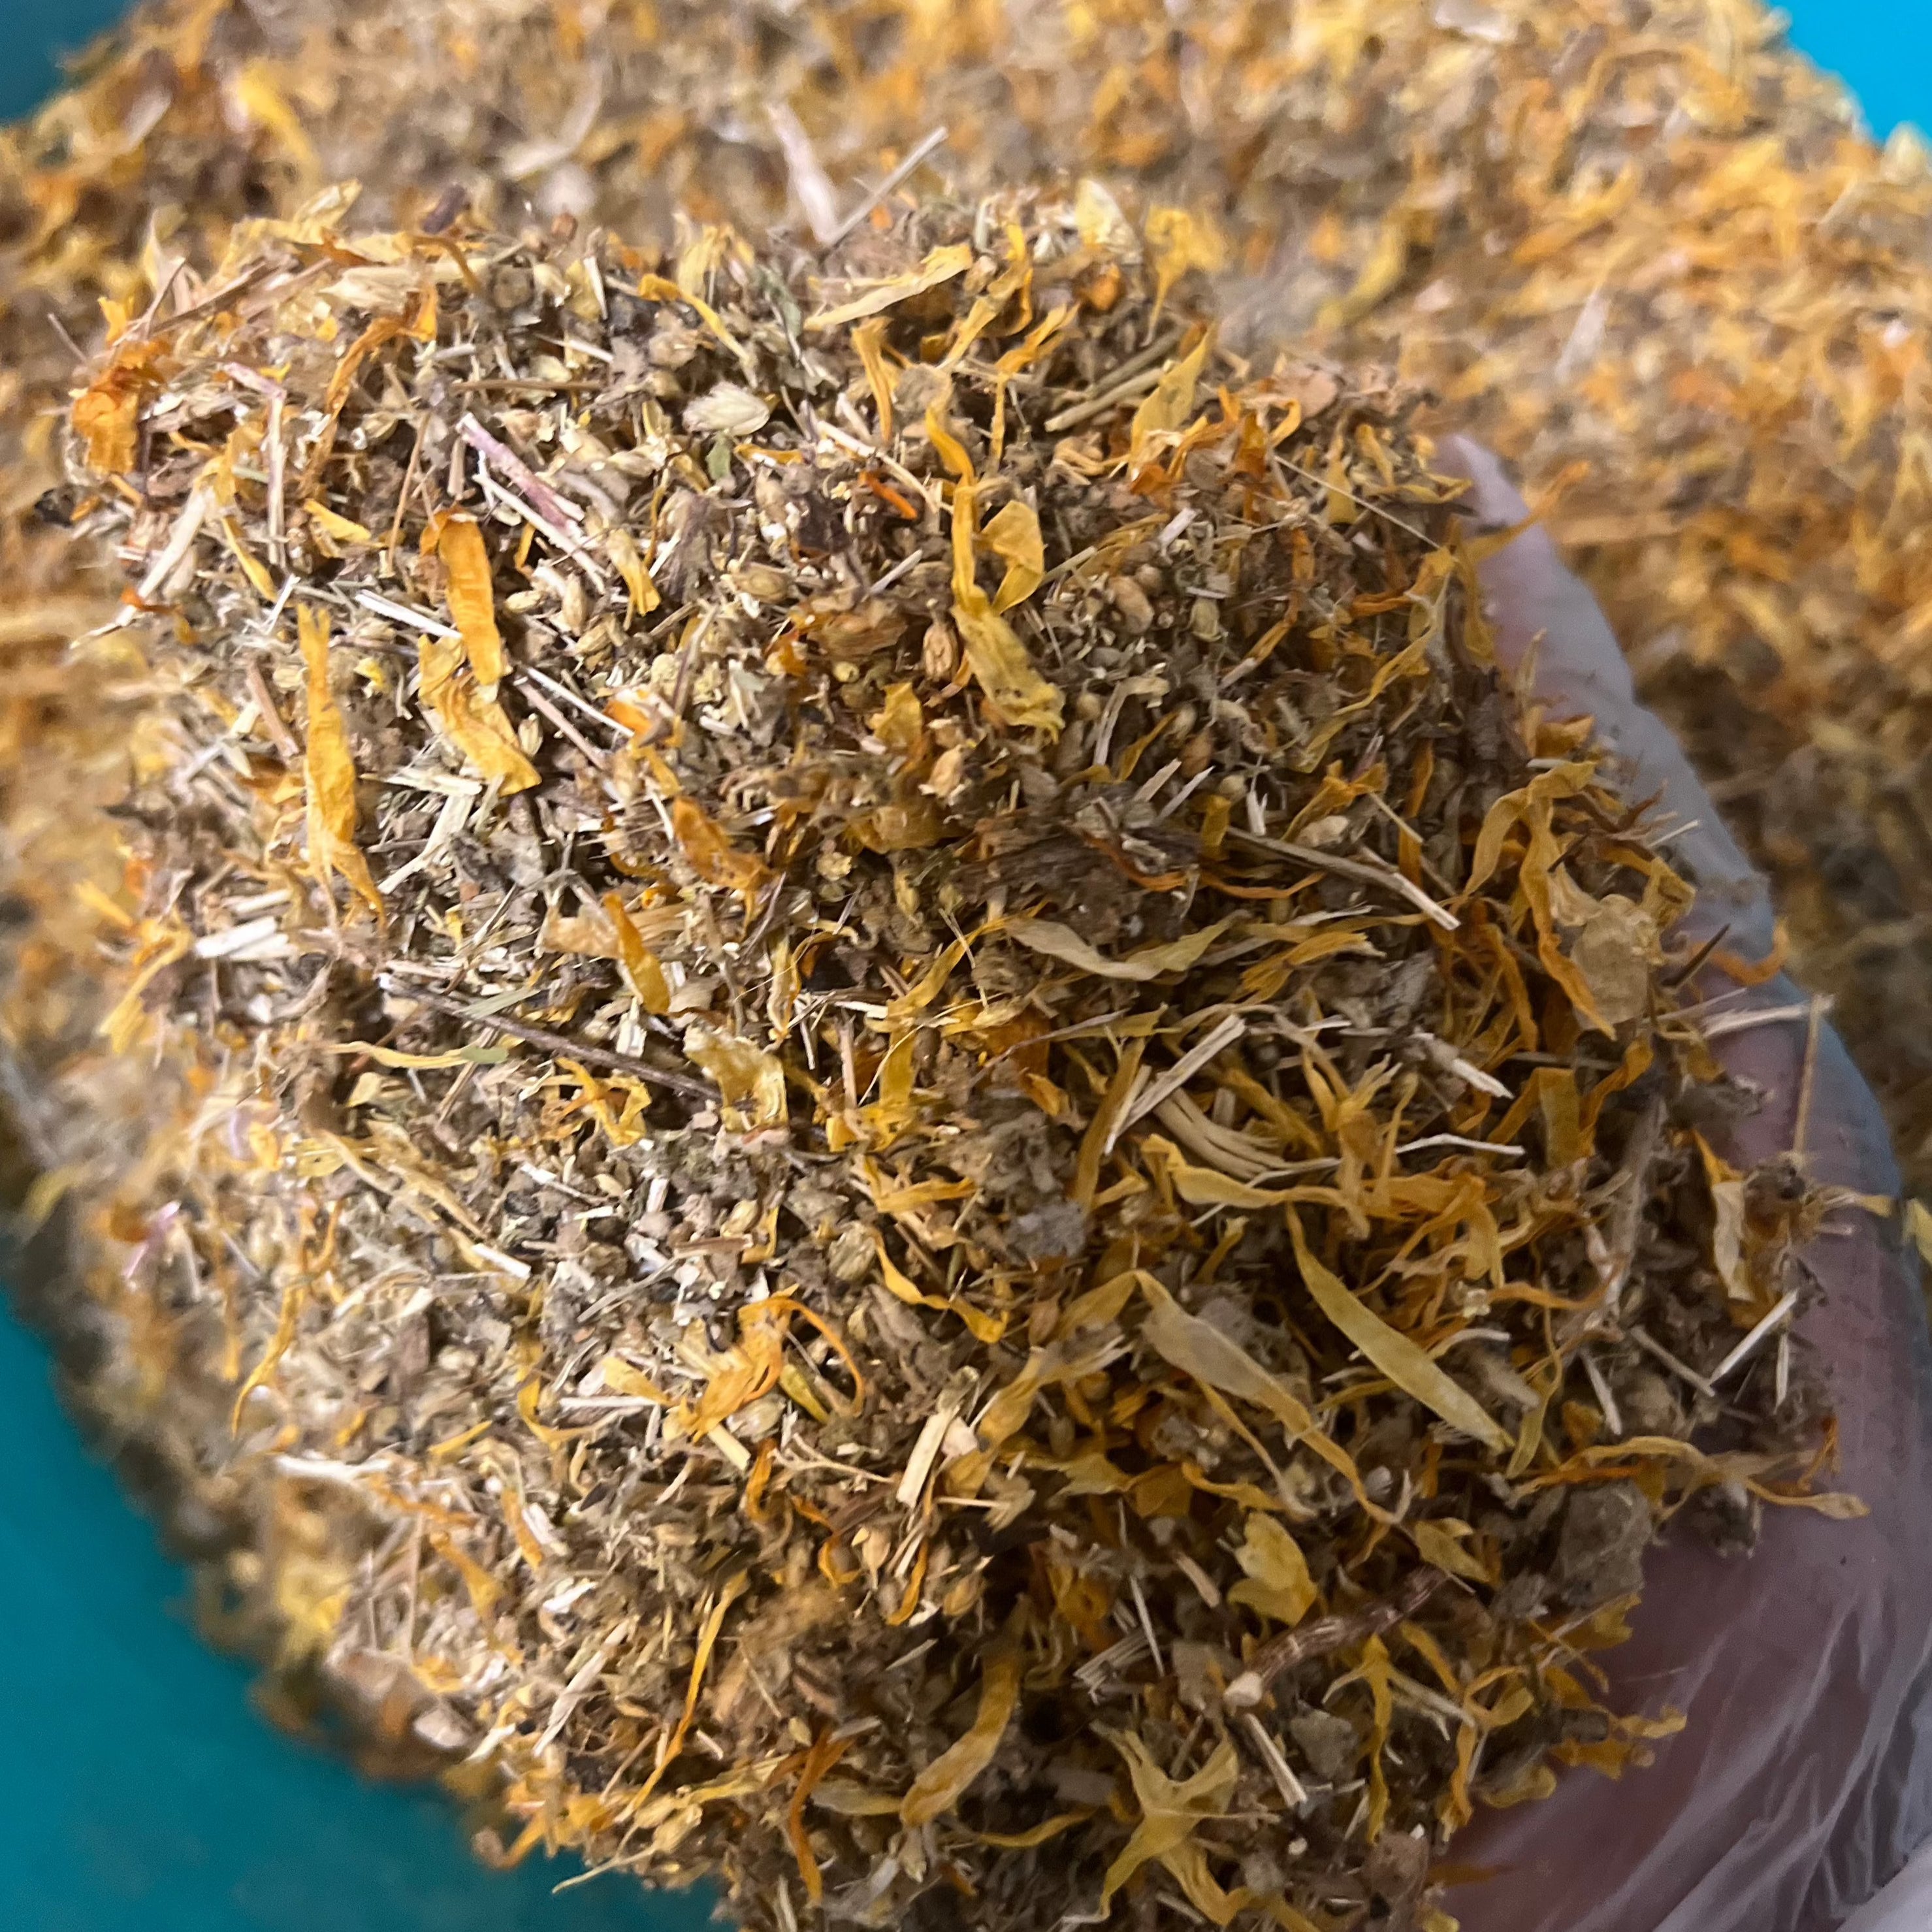 Hemorrhoids / Piles Herbal Tea Blend